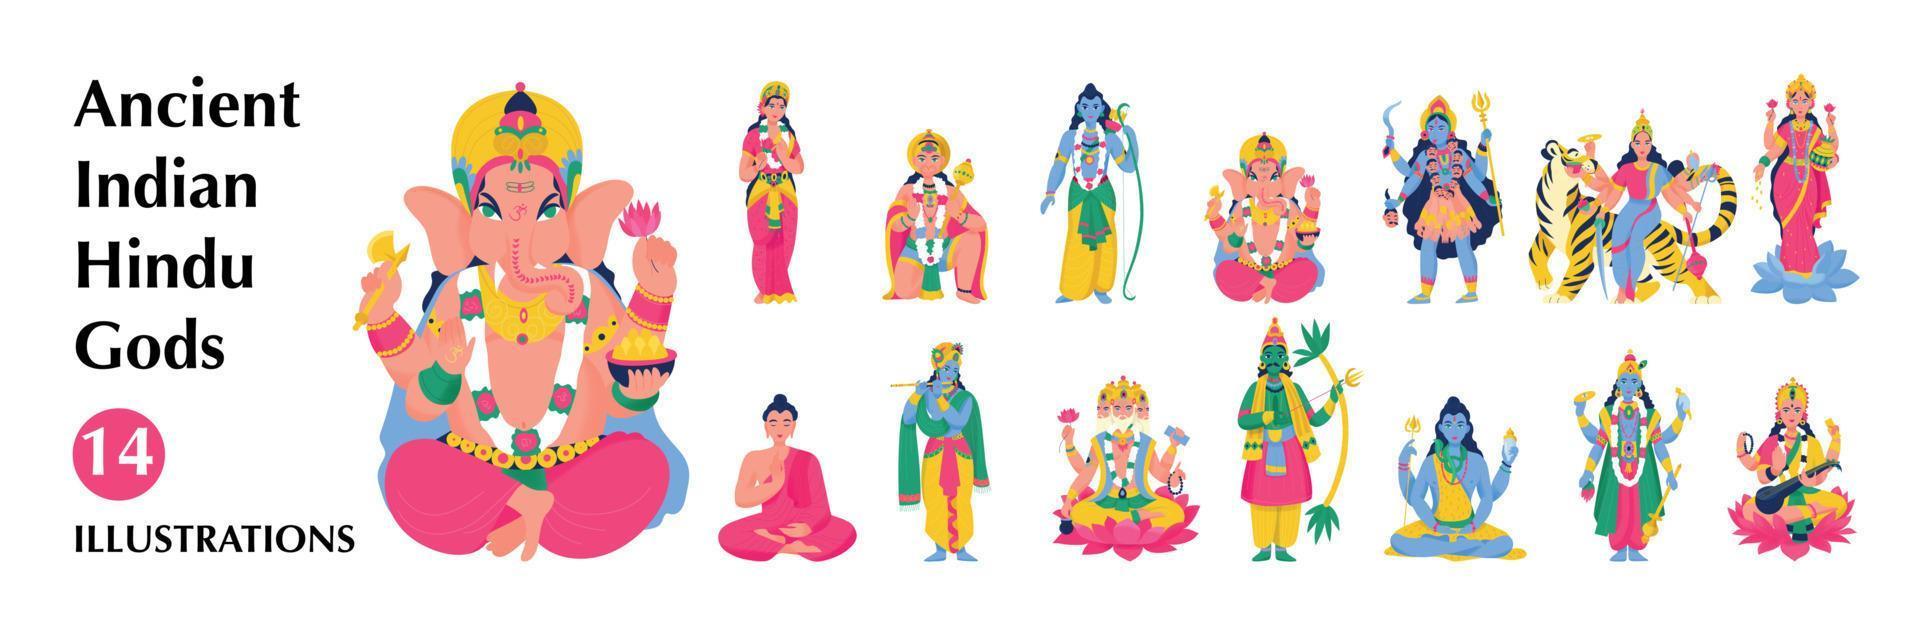 conjunto de iconos grandes de dioses hindúes indios antiguos aislados vector